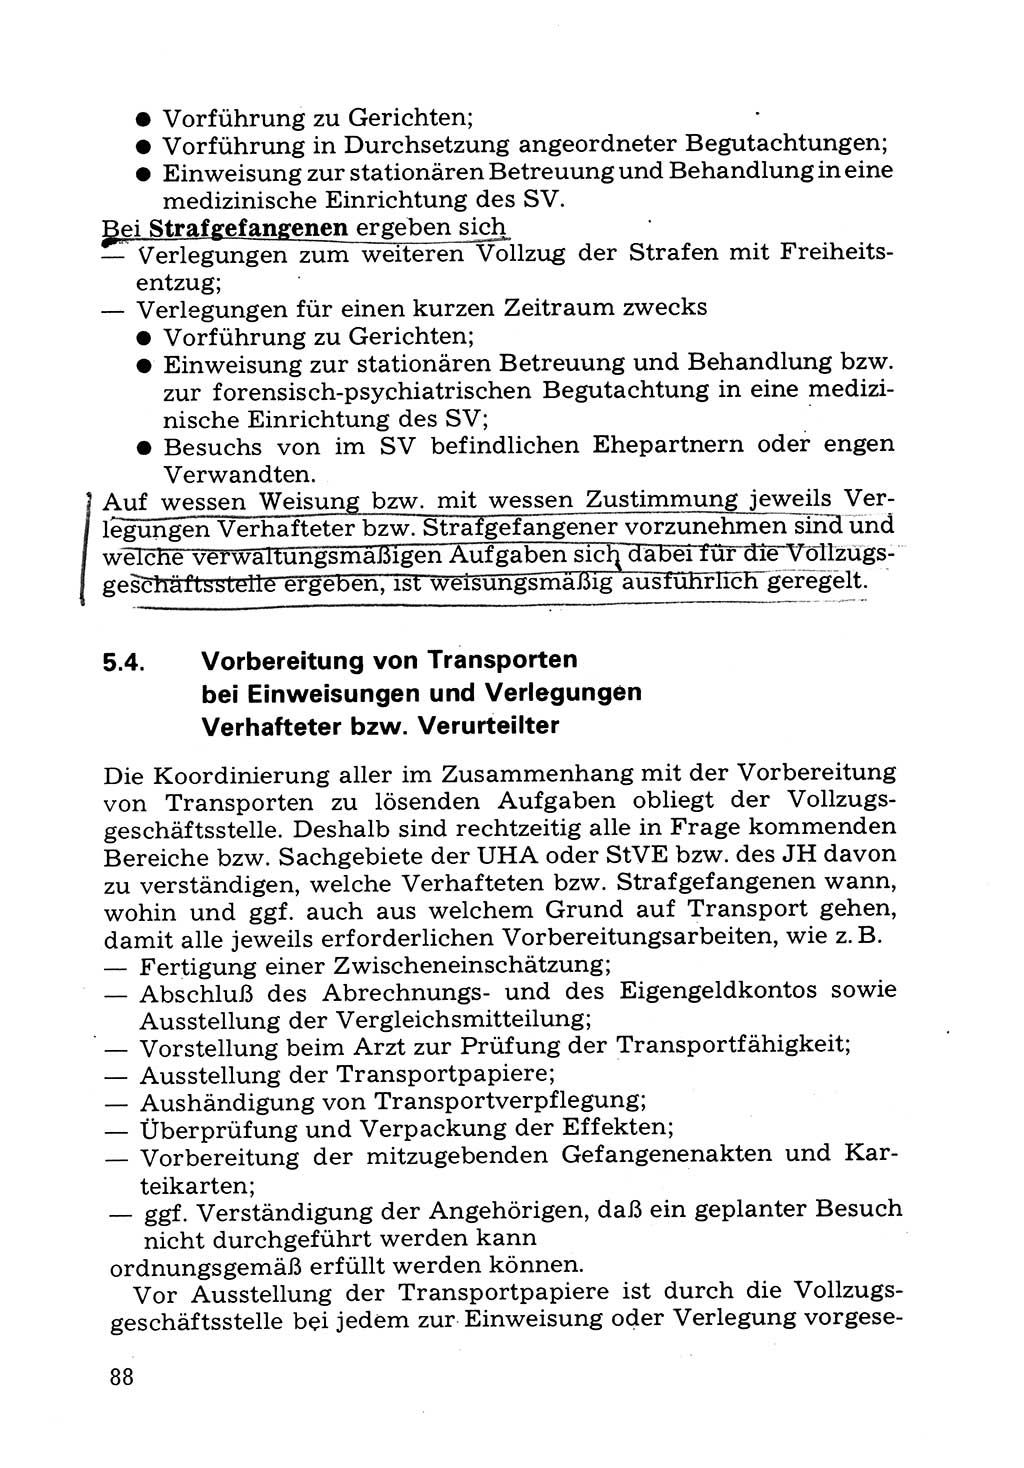 Verwaltungsmäßige Aufgaben beim Vollzug der Untersuchungshaft (U-Haft) sowie der Strafen mit Freiheitsentzug (SV) [Deutsche Demokratische Republik (DDR)] 1980, Seite 88 (Aufg. Vollz. U-Haft SV DDR 1980, S. 88)